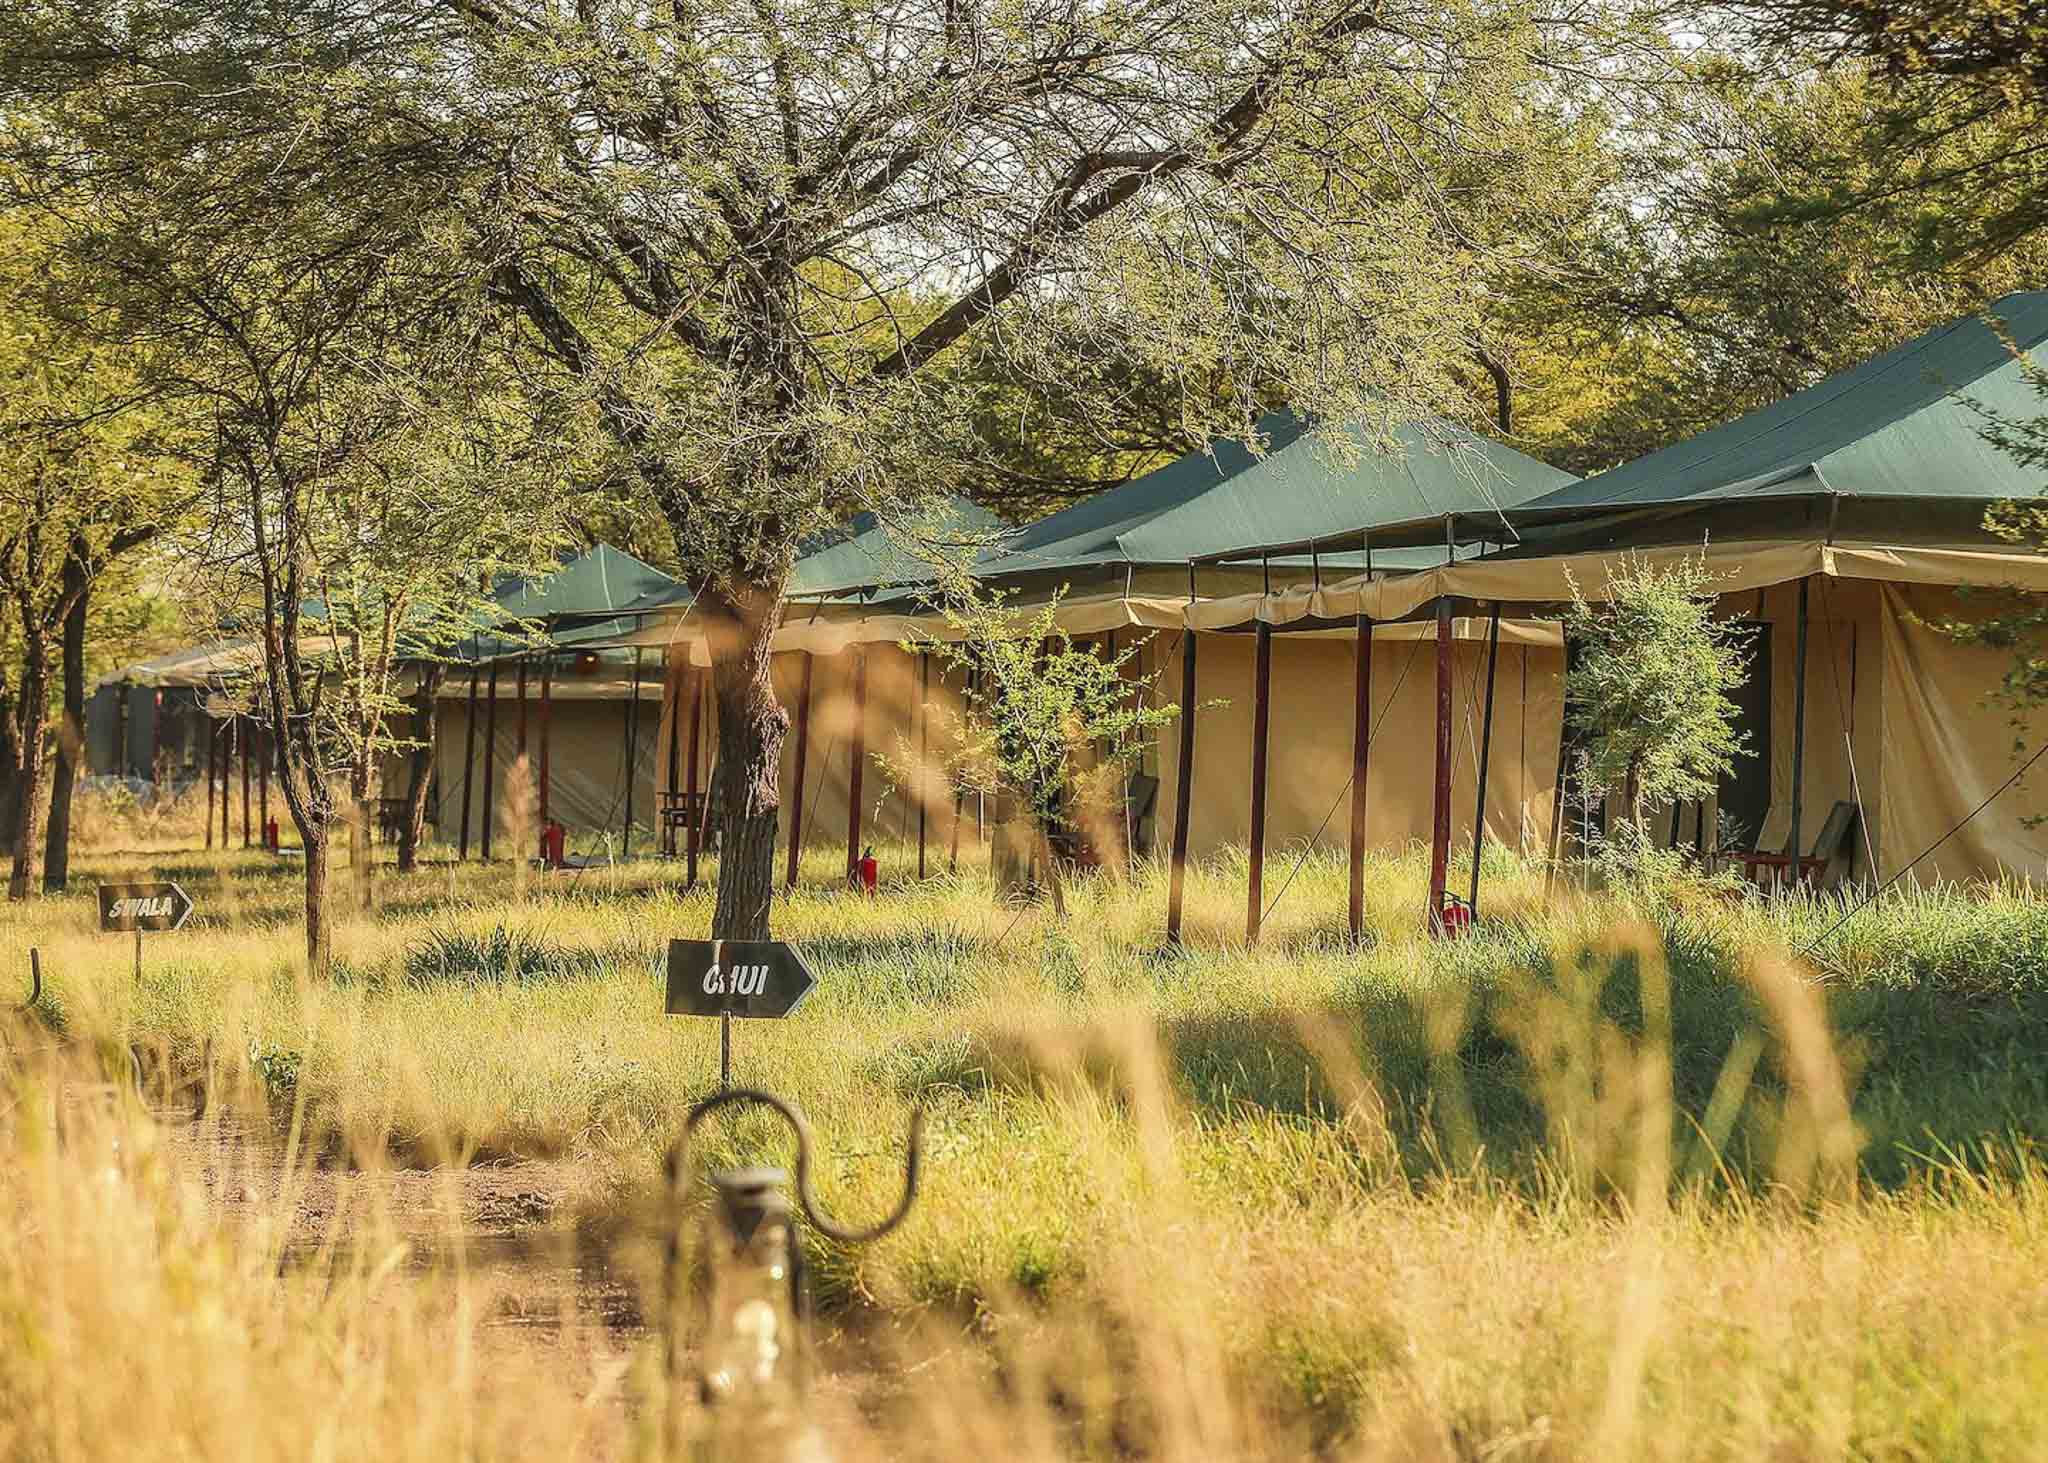 Tukaone Camp Serengeti